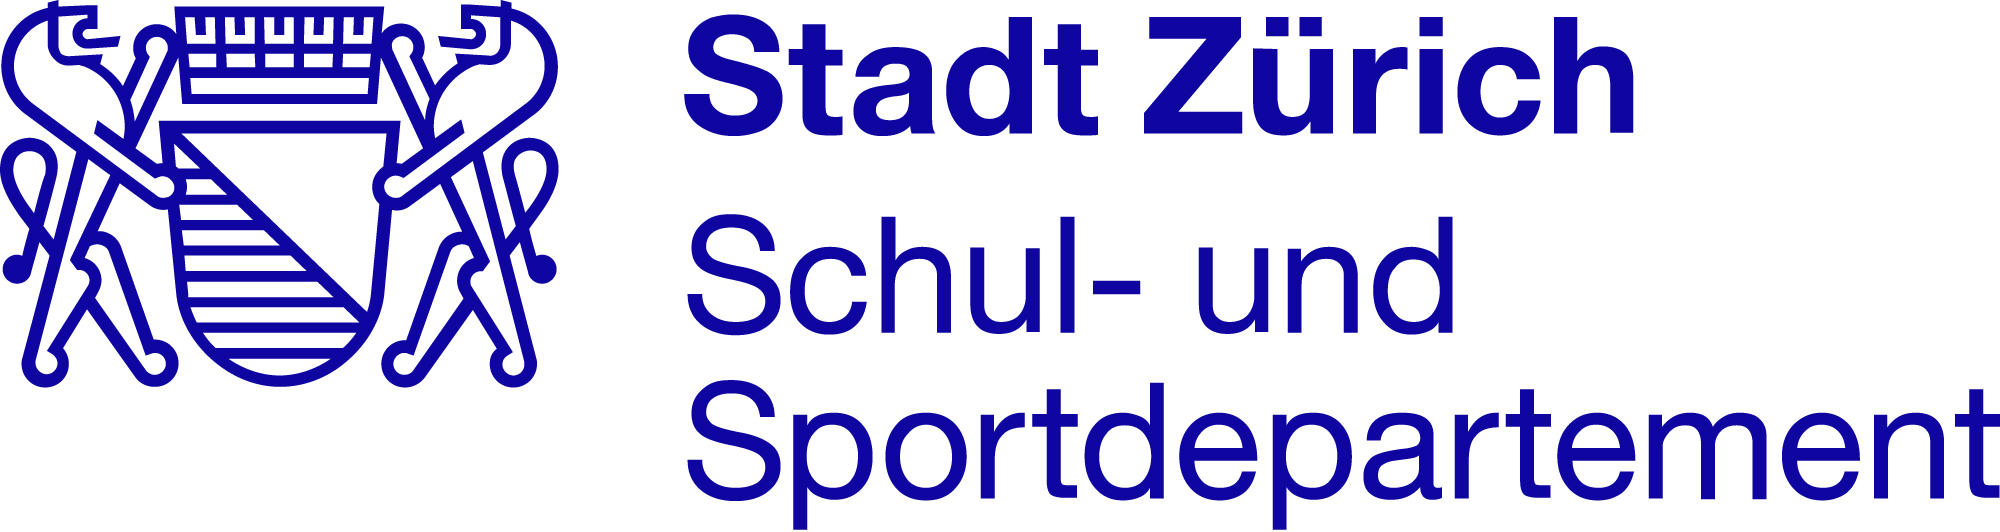 Schul- und Sportdepartement Stadt Zürich